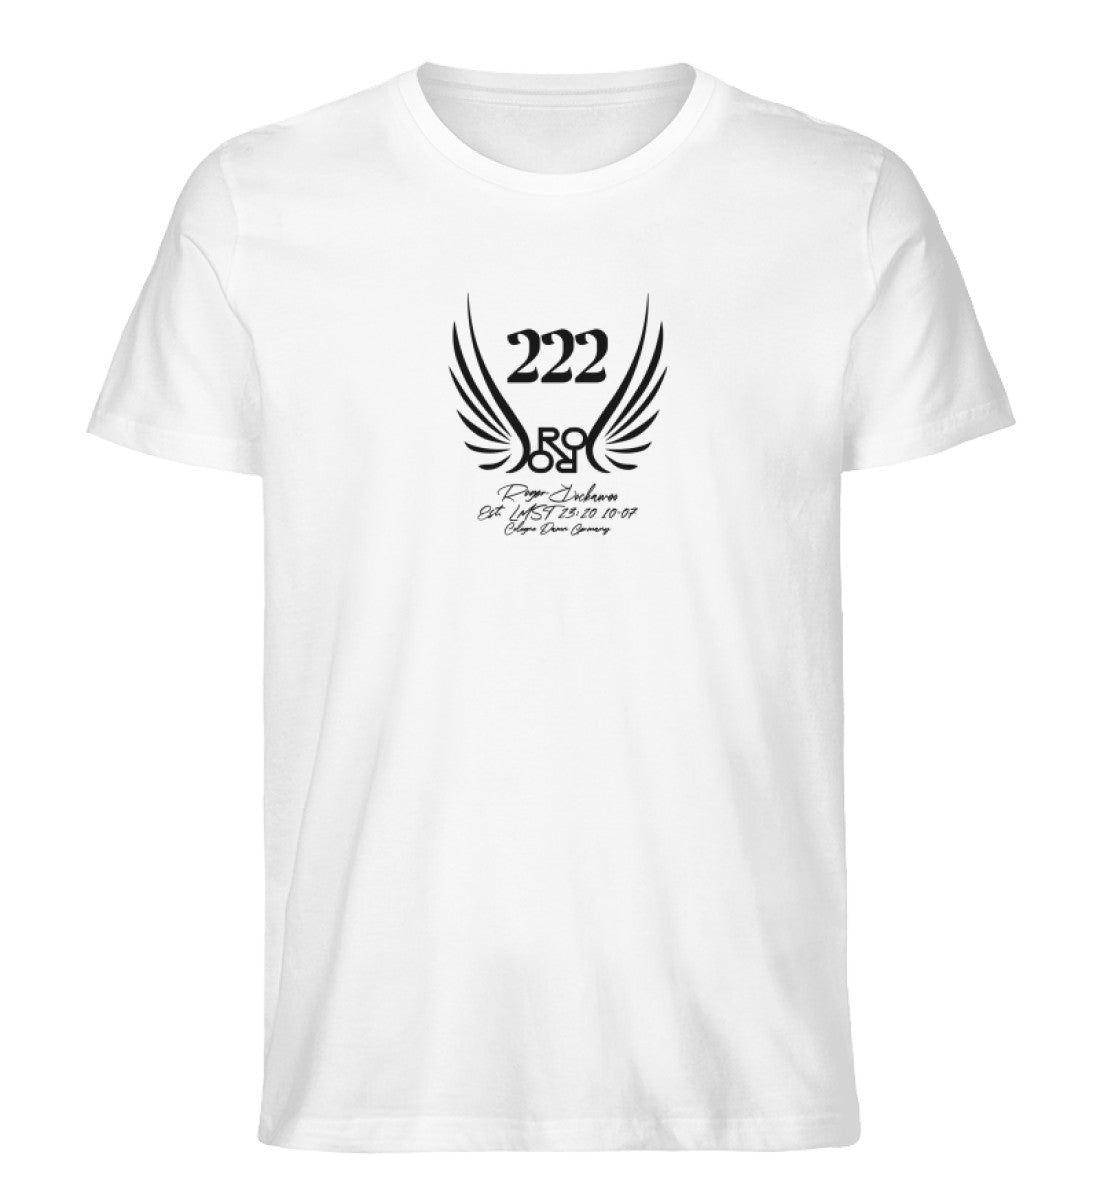 Weißes T-Shirt Unisex für Damen und Herren bedruckt in schwarz mit der Engelszahl 222 und symboloschen Engelsfluegeln und dem Logo von Roger Rockawoo Clothing